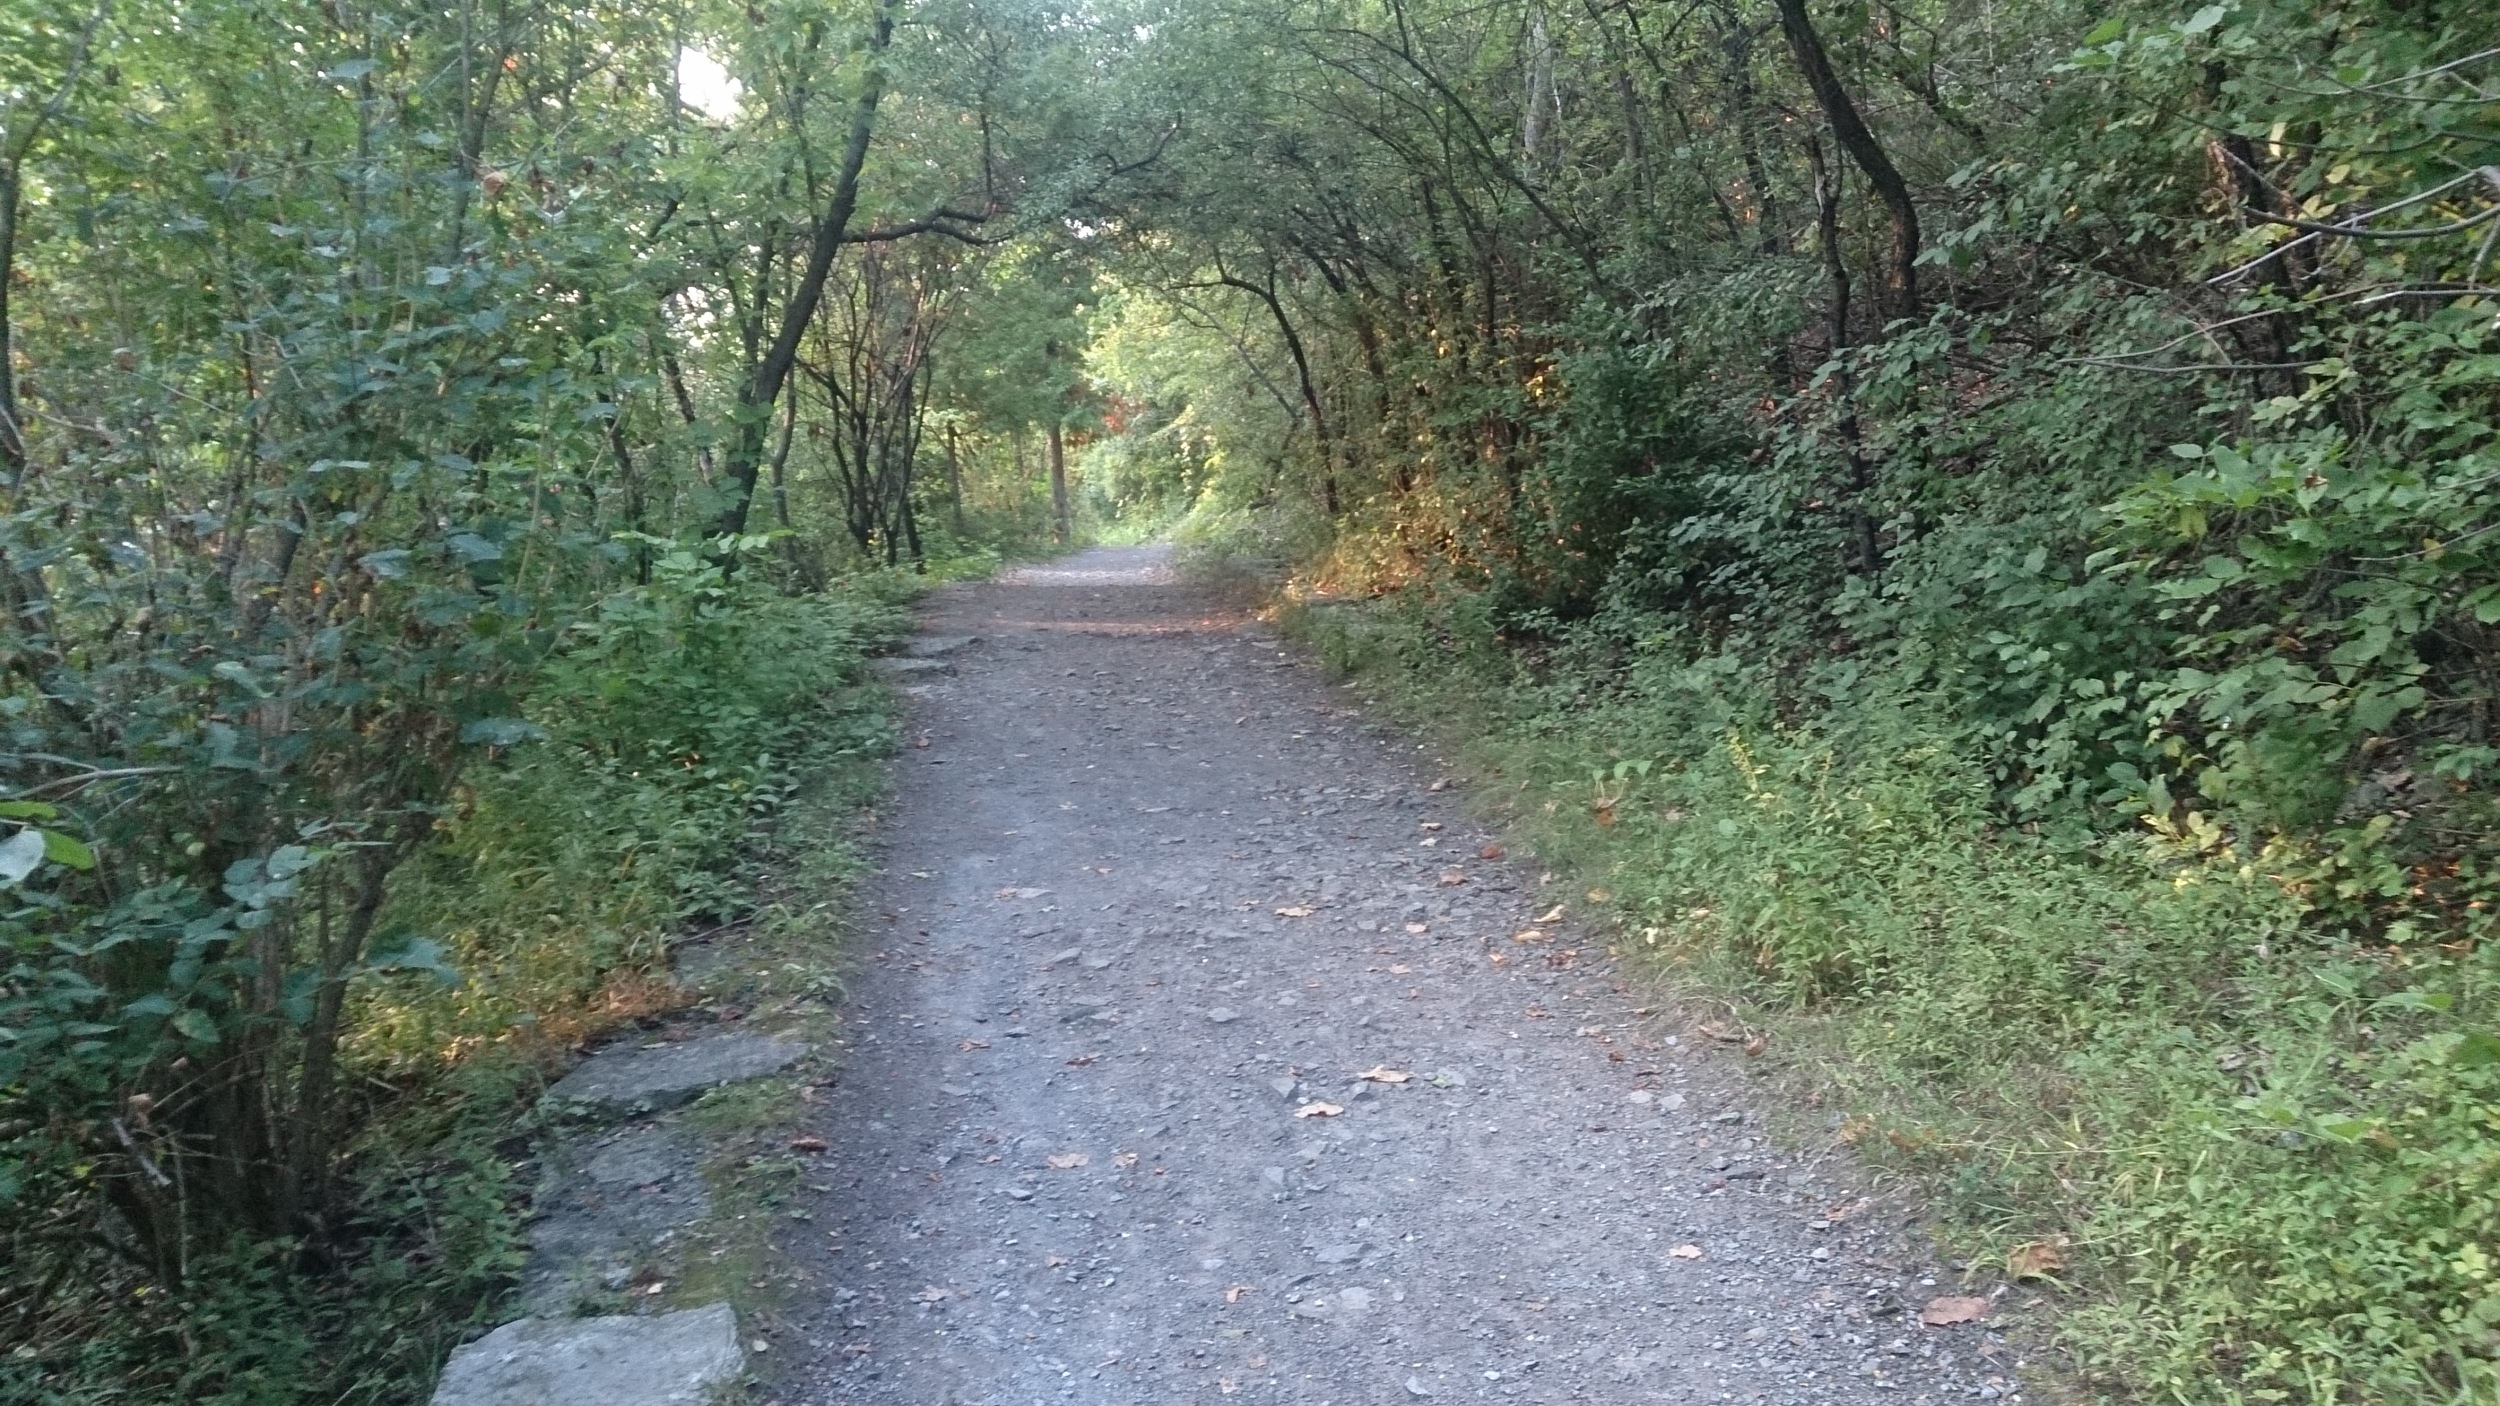 A cool little hiking trail near the Rideau Falls